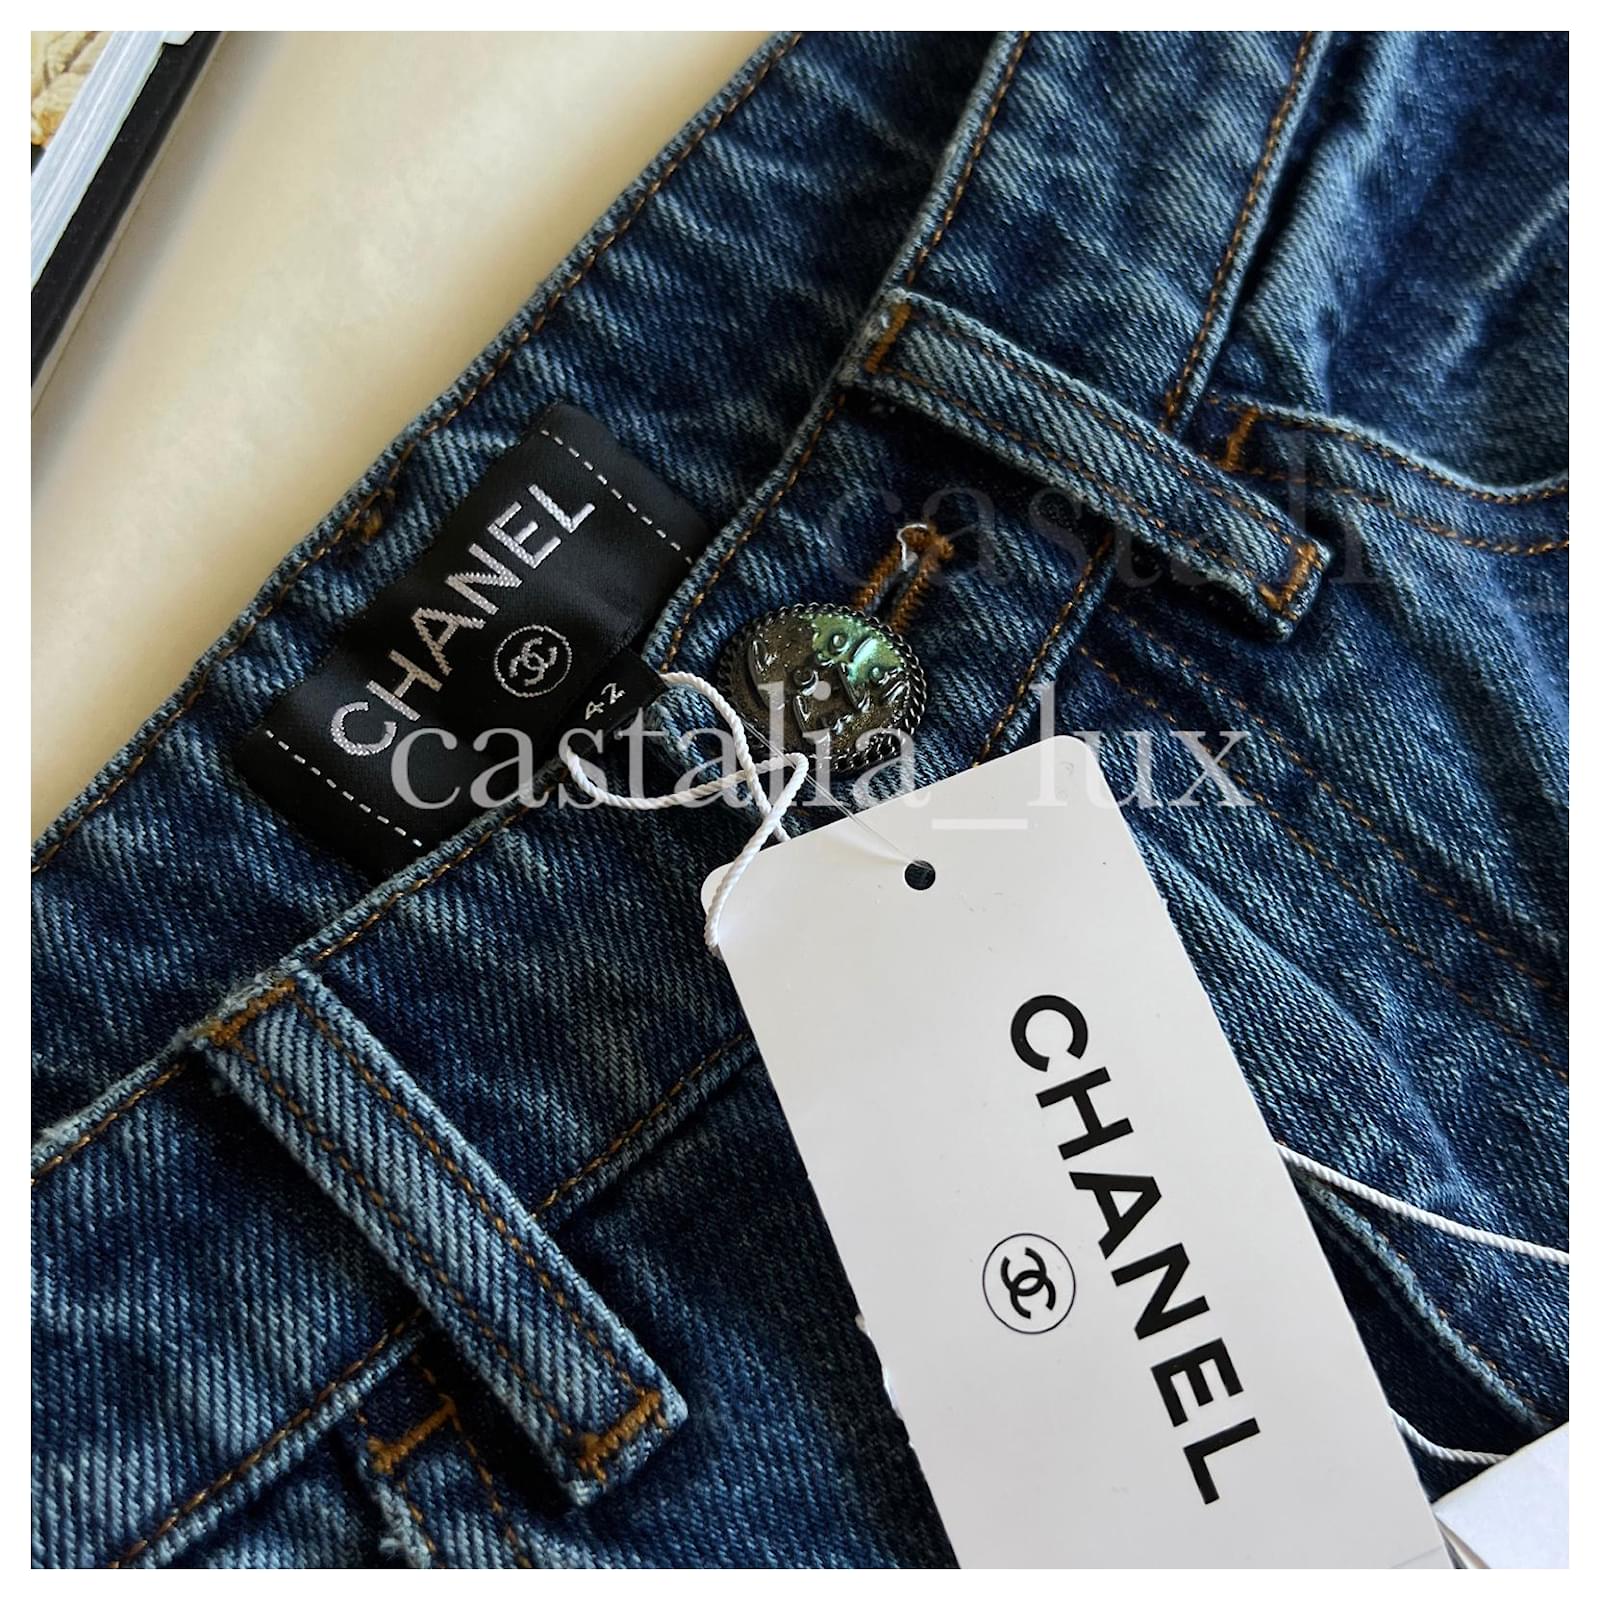 Jeans Chanel New Paris / Cuba Runway Jeans Size 42 FR